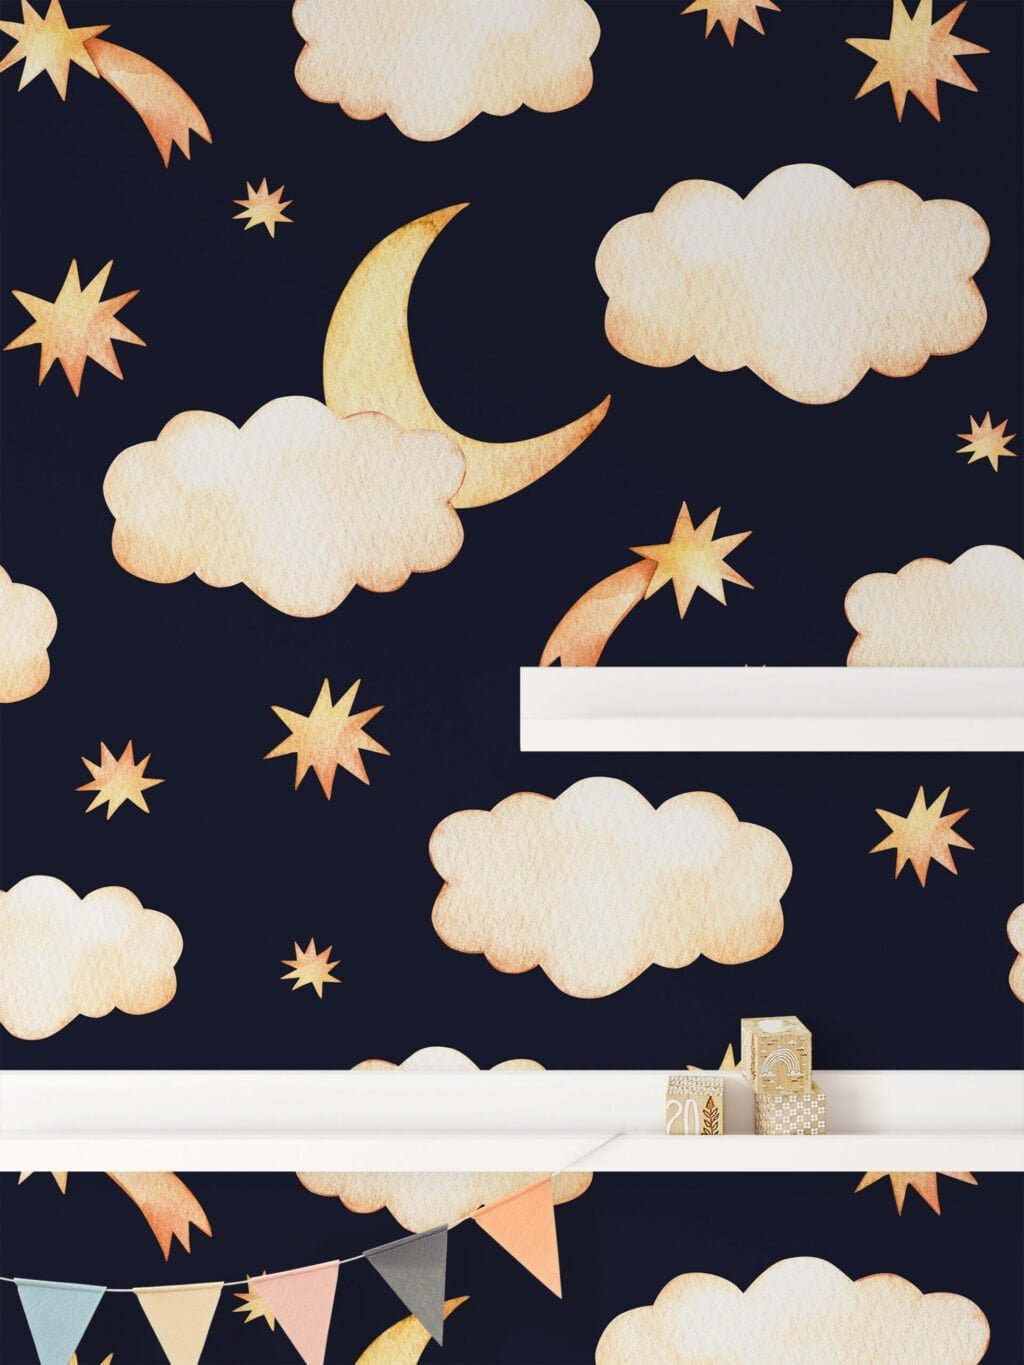 Sulu Boya Ay Gece Bulutları ve Yıldızlar Duvar Kağıdı, Gece Gökyüzü 3D Duvar Posteri Bebek Odası Duvar Kağıtları 4